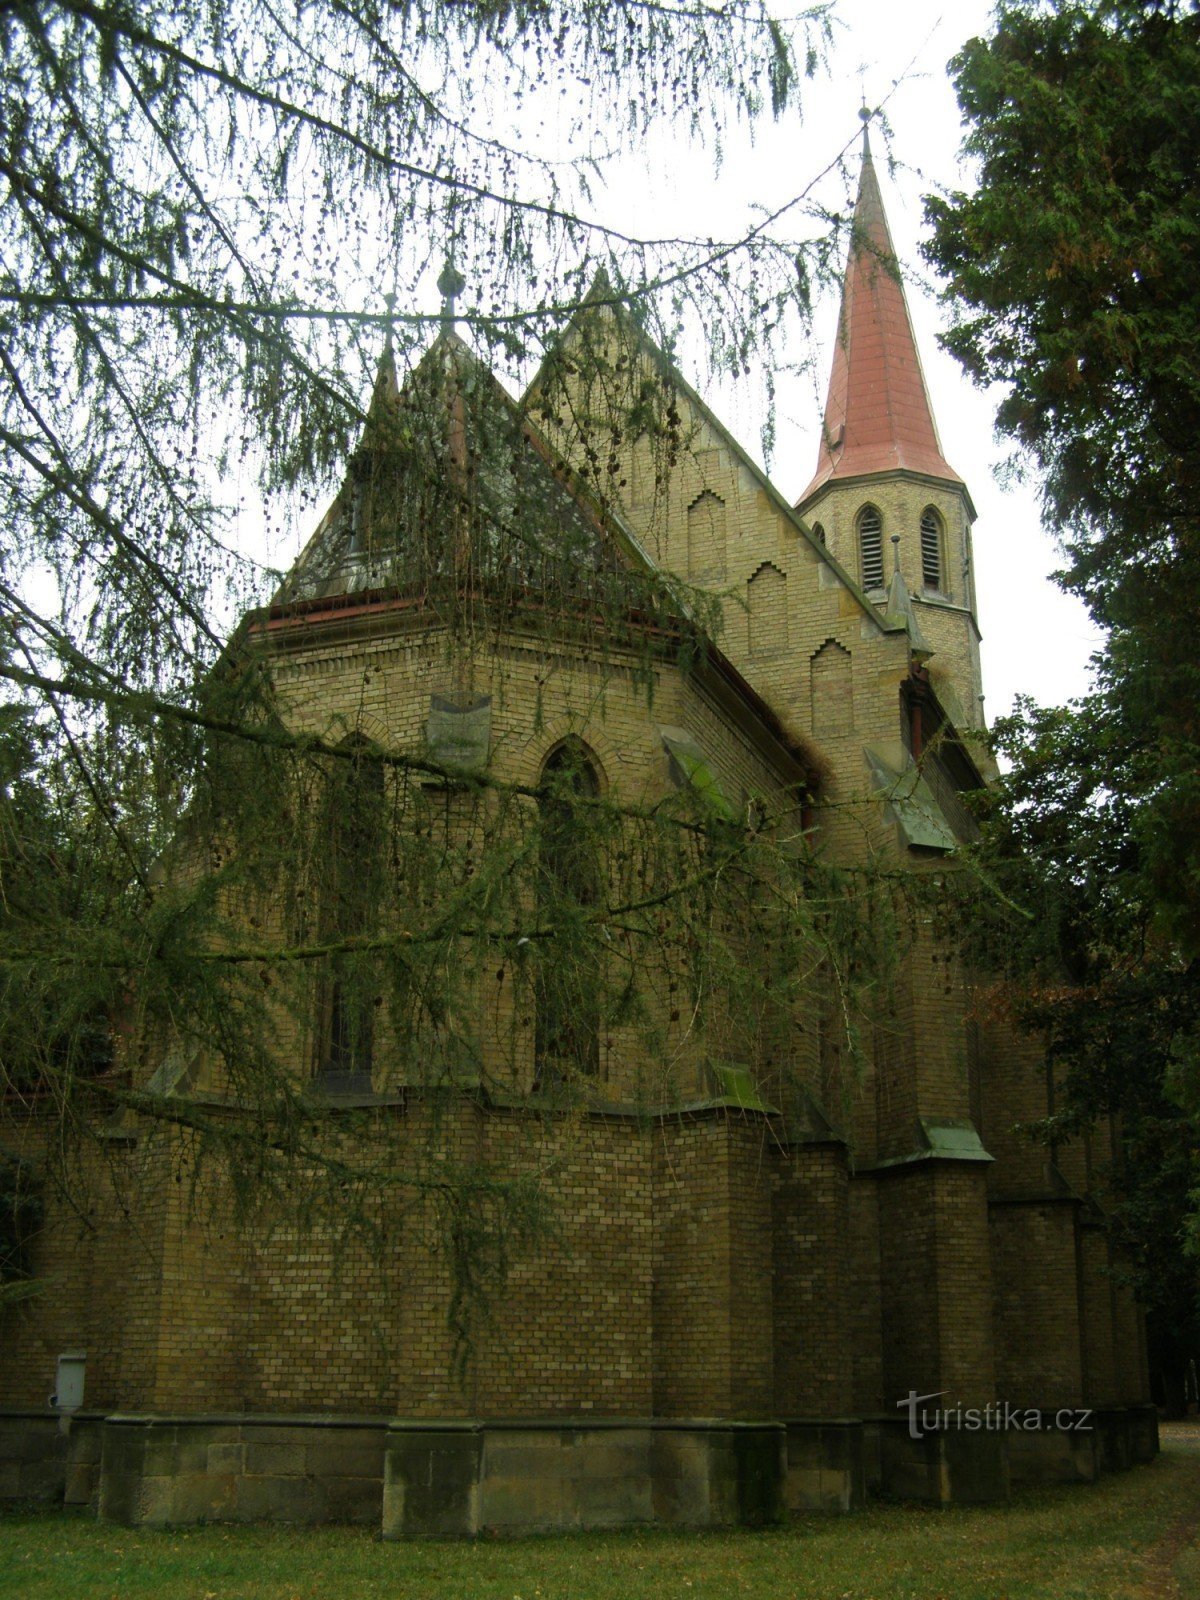 Nový Bydžov - igreja da Virgem Maria das Sete Dores